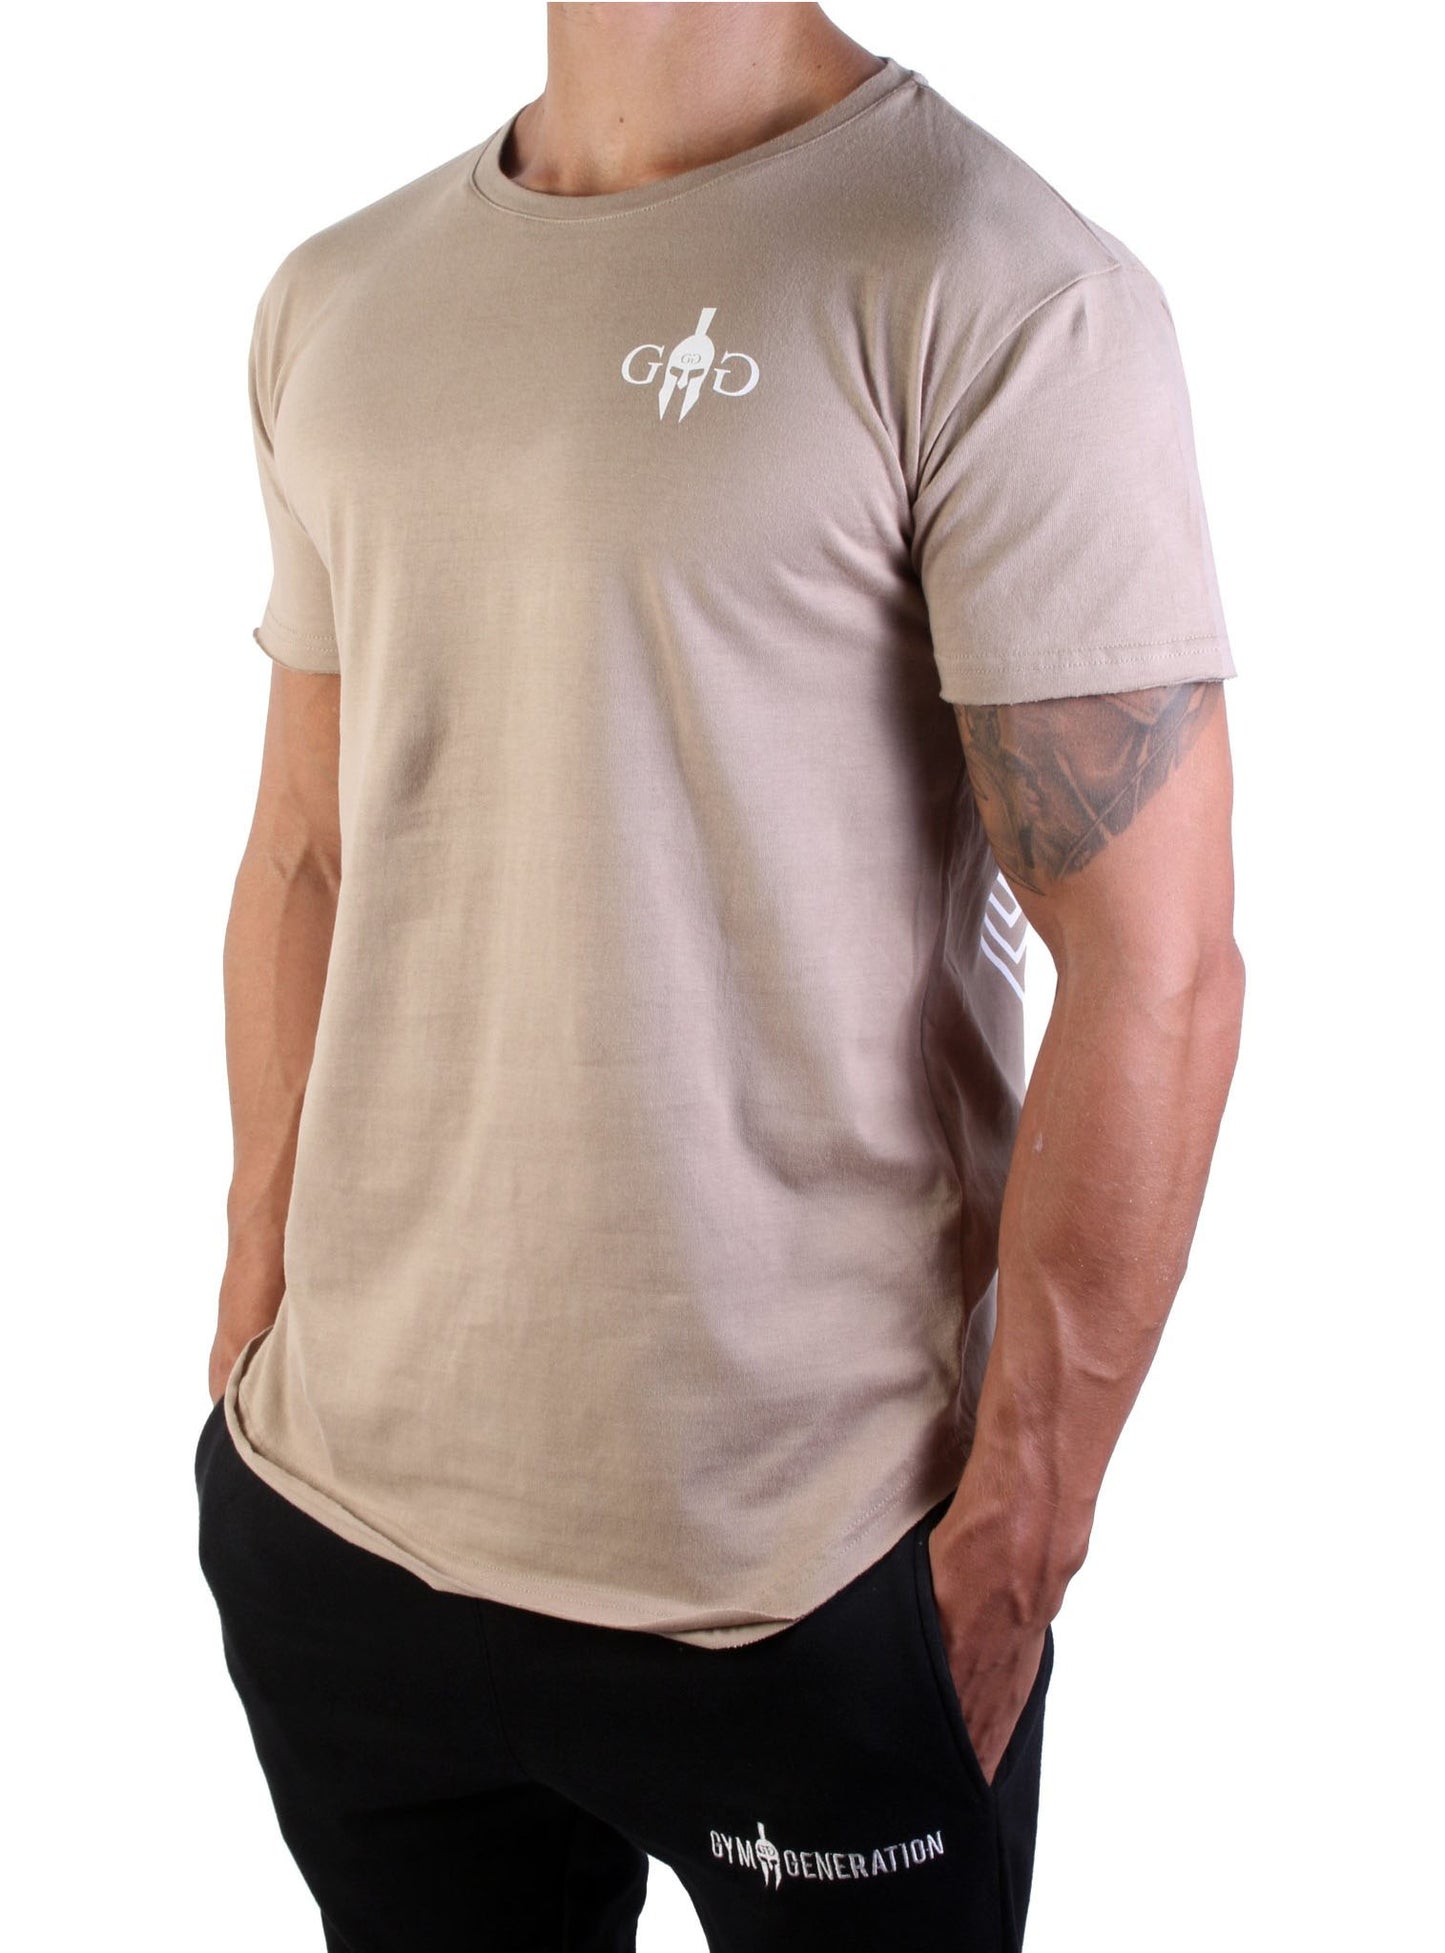 Beige T-Shirt von Gym Generation, inspiriert von Alexander dem Großen, perfekter Tragekomfort und elegantes Design.